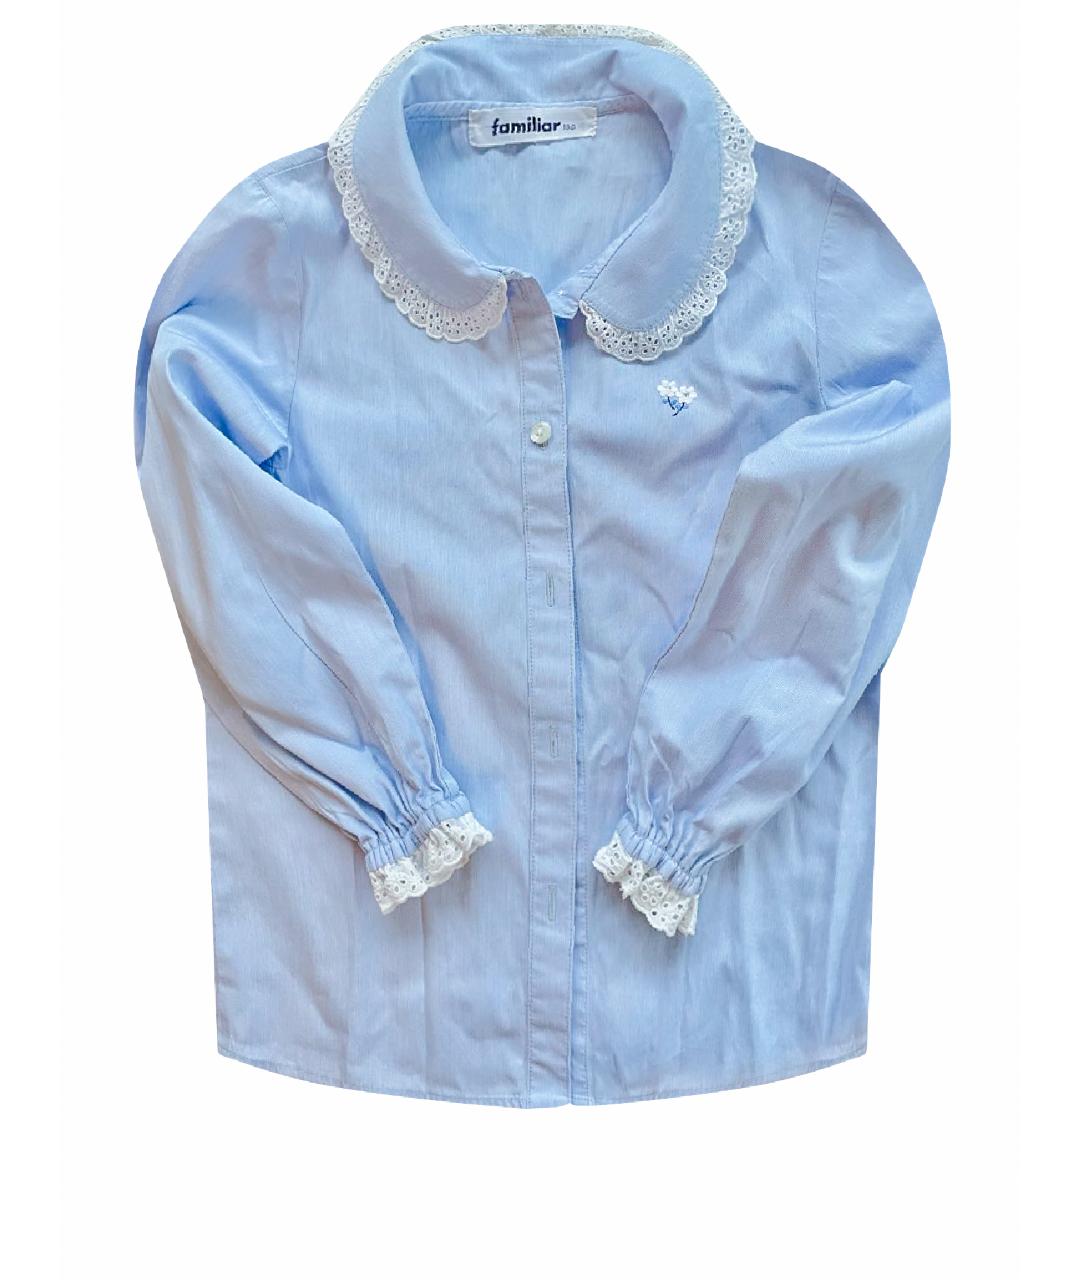 FAMILIAR Голубая хлопковая рубашка/блузка, фото 1